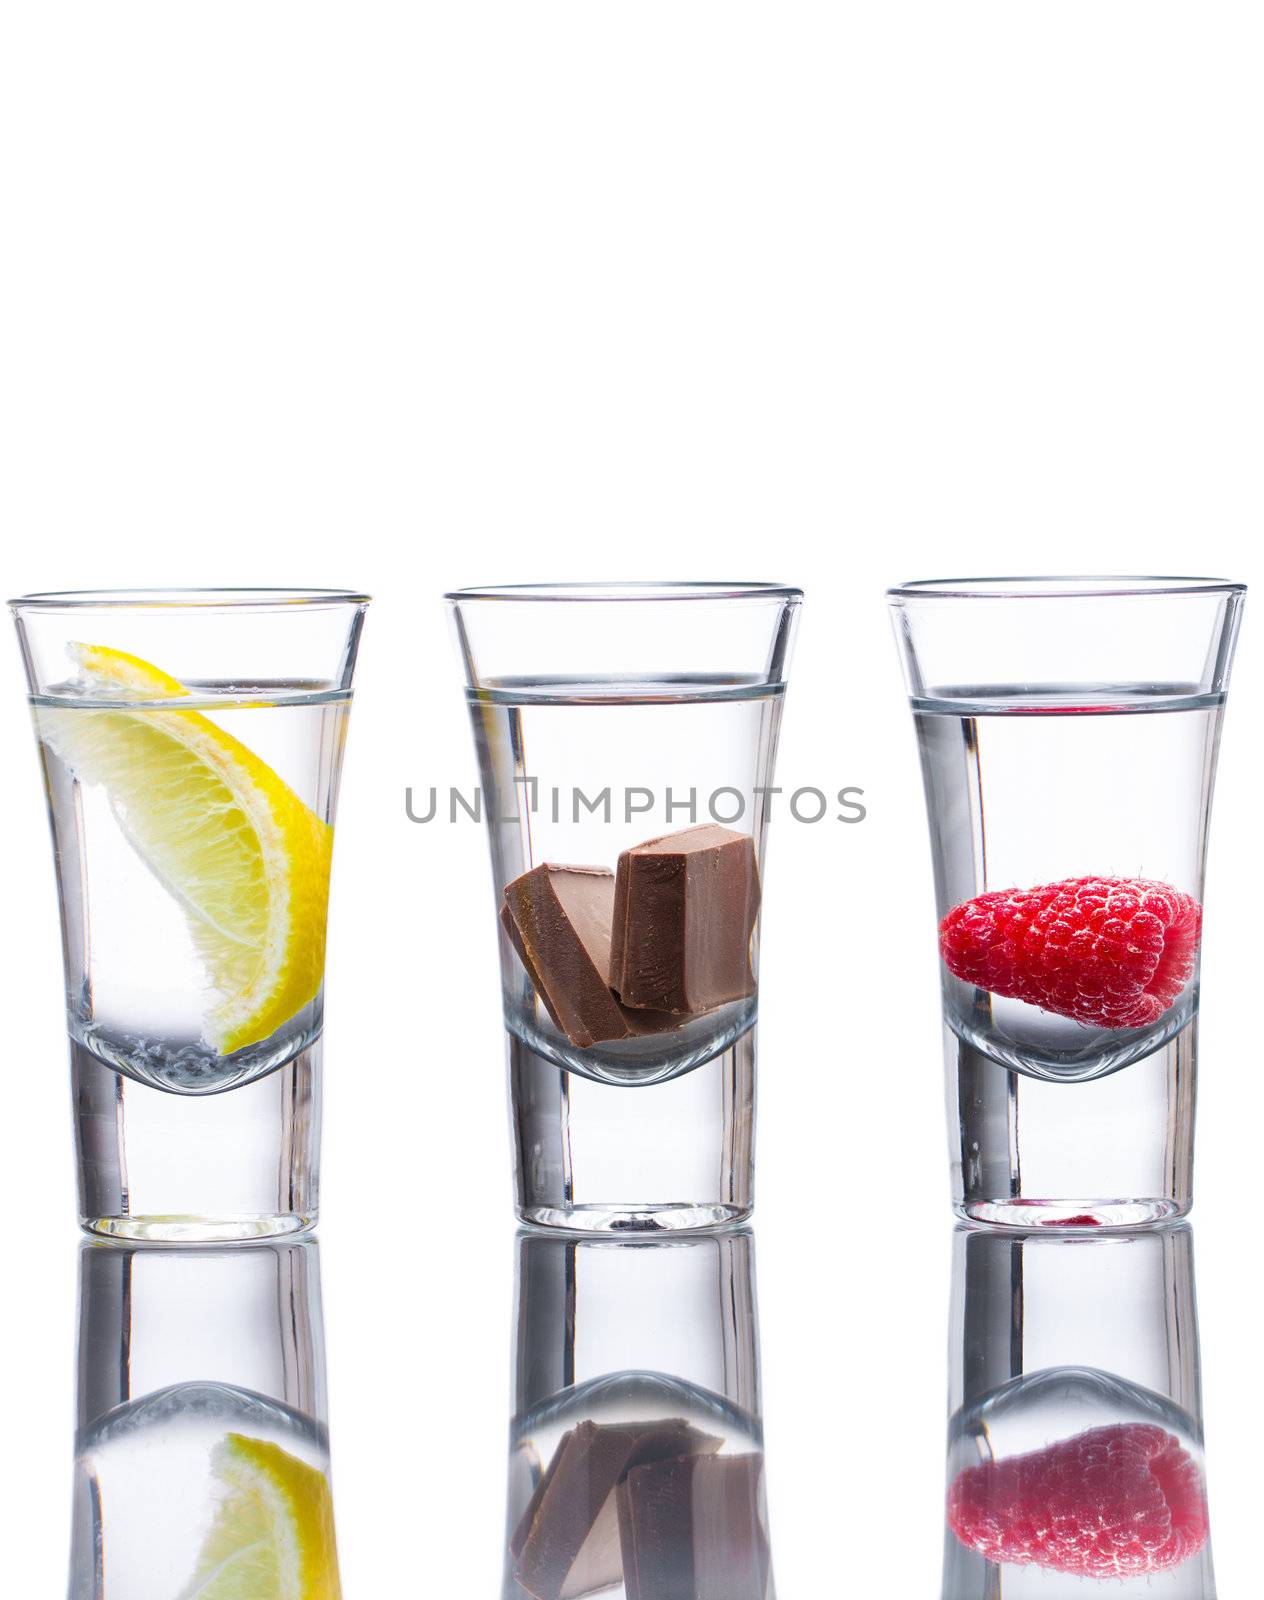 Flavoured vodka shots by Jaykayl